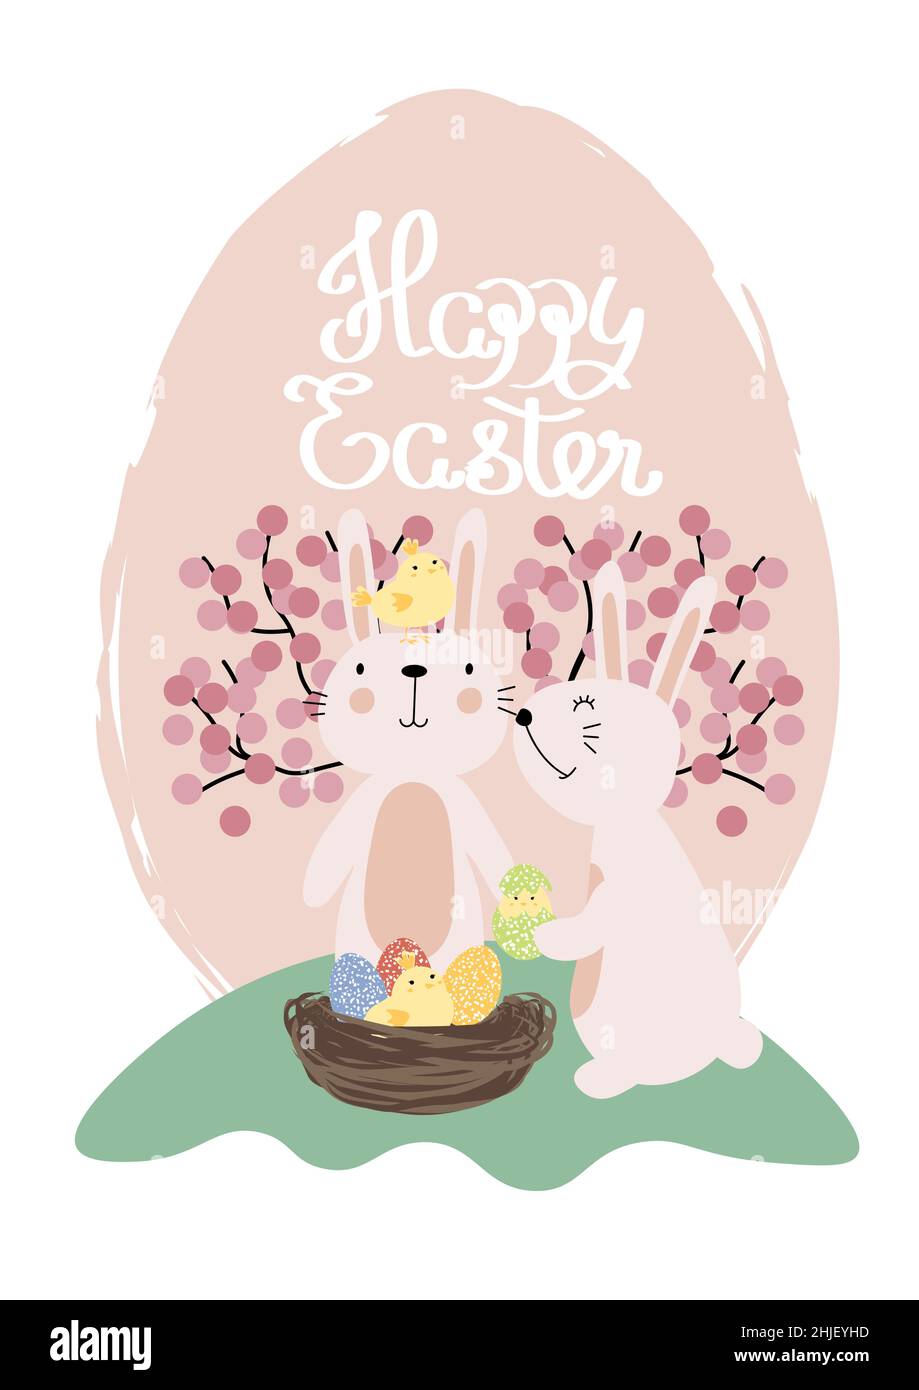 Vektor-Illustration von niedlichen Hasen mit hellen Eiern und kleinen Hühnern. Frohe Ostern Grüße Text. Design für Web, Website, Banner, Poster, Karte Stock Vektor